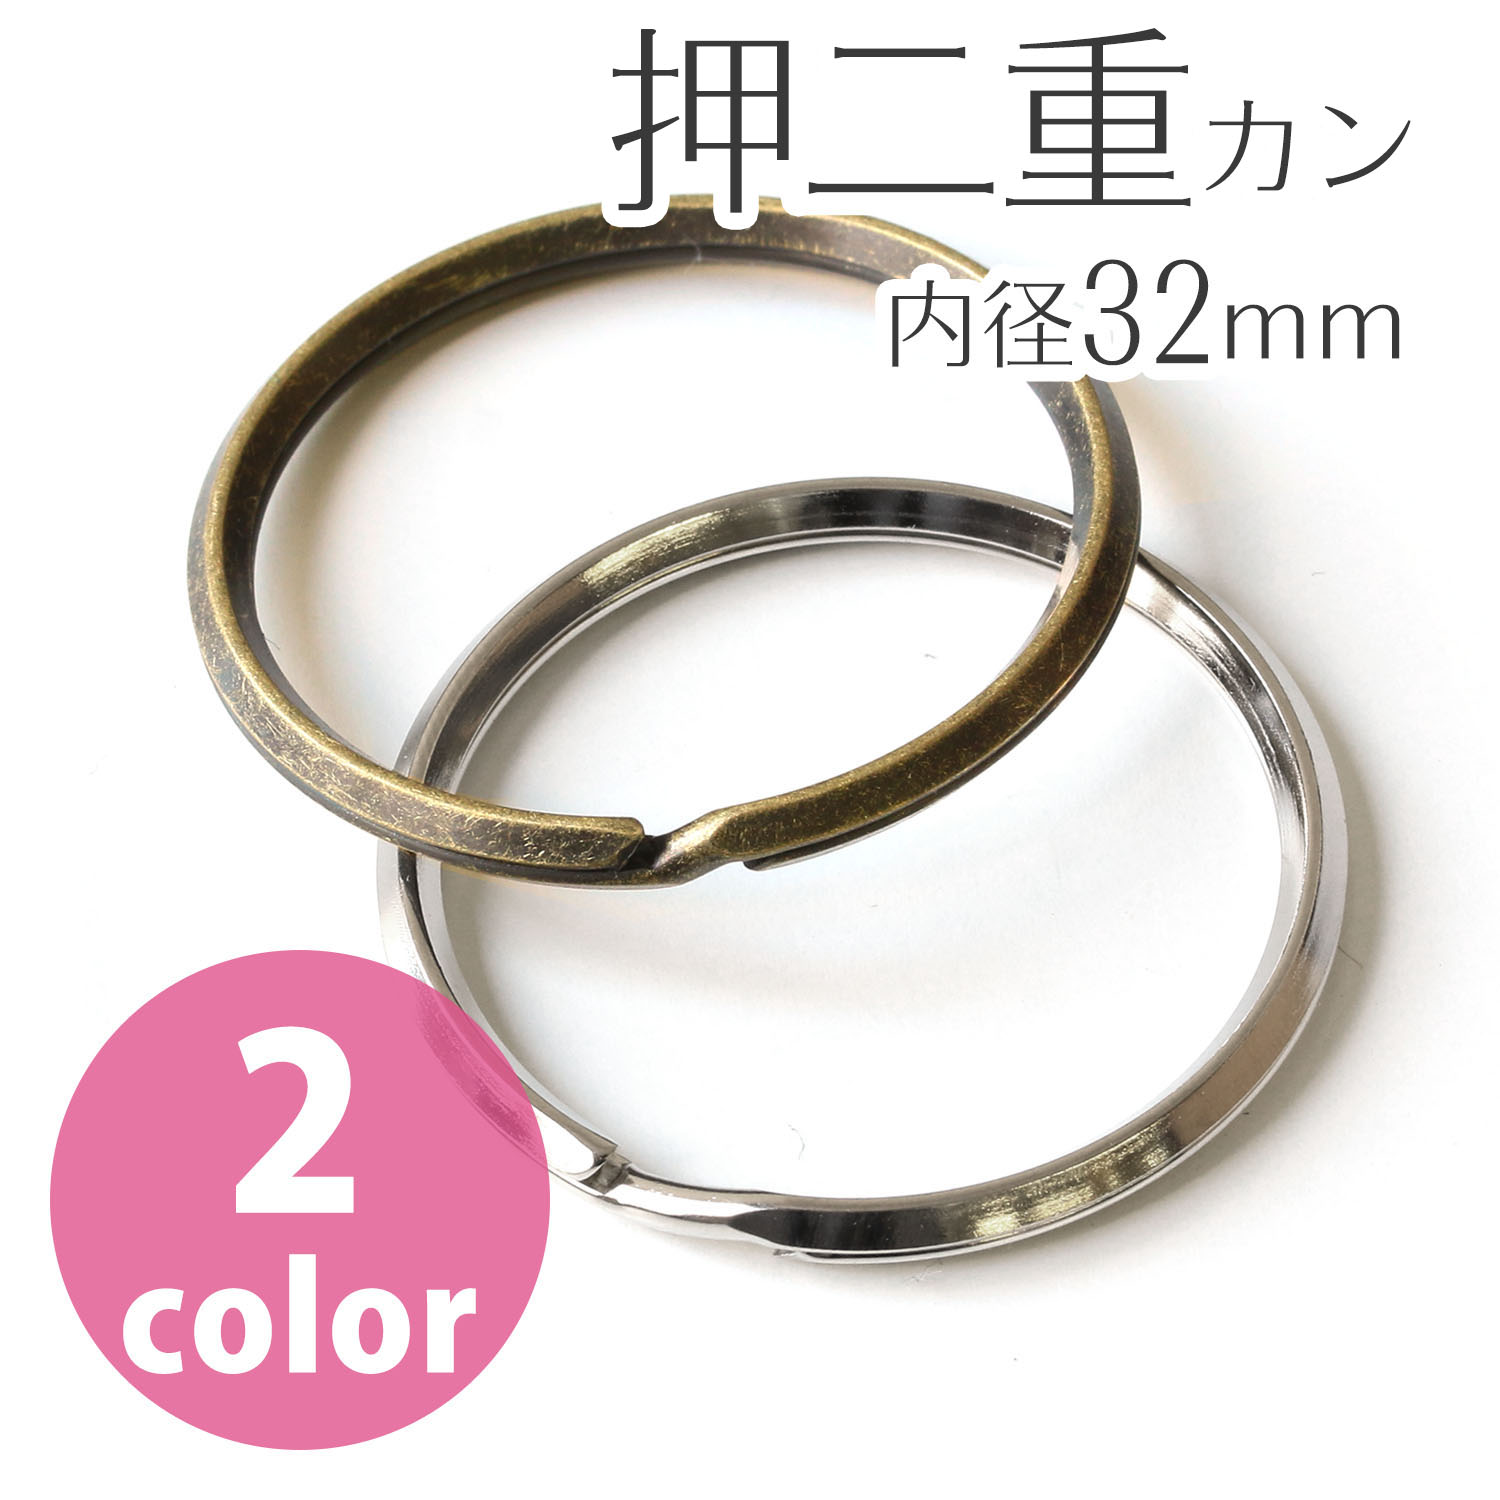 Split Rings outer diameter 38mm, inner diameter 32mm S 30pcs (bag)